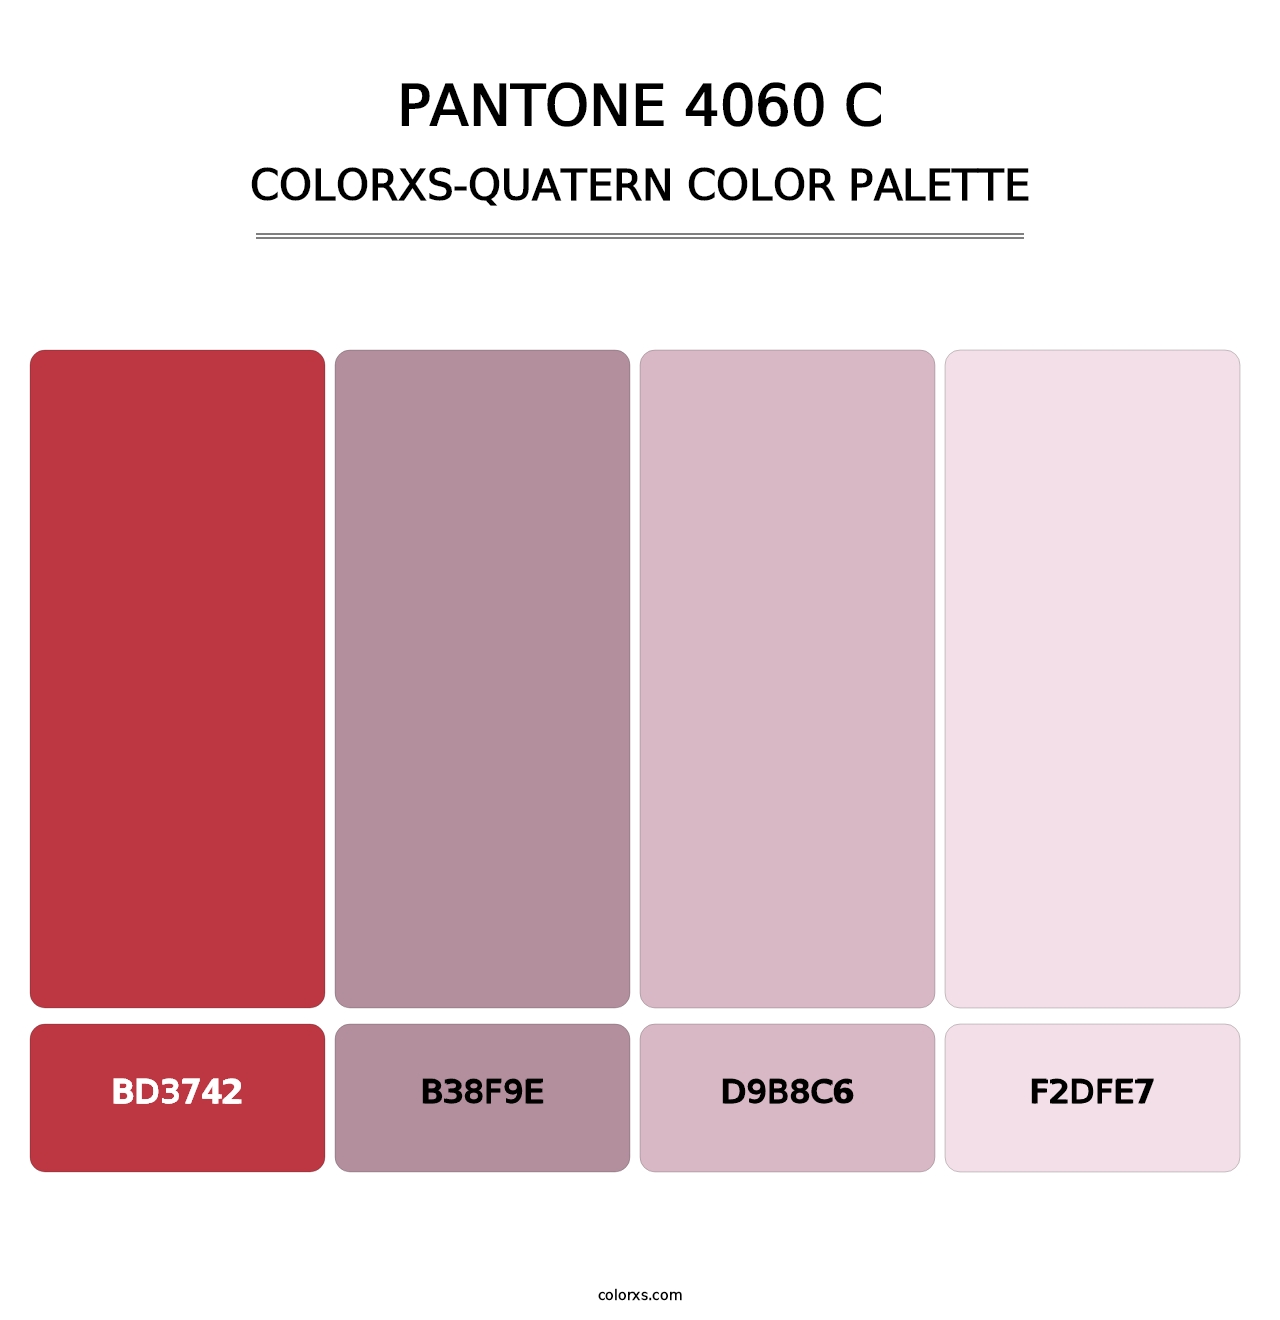 PANTONE 4060 C - Colorxs Quatern Palette